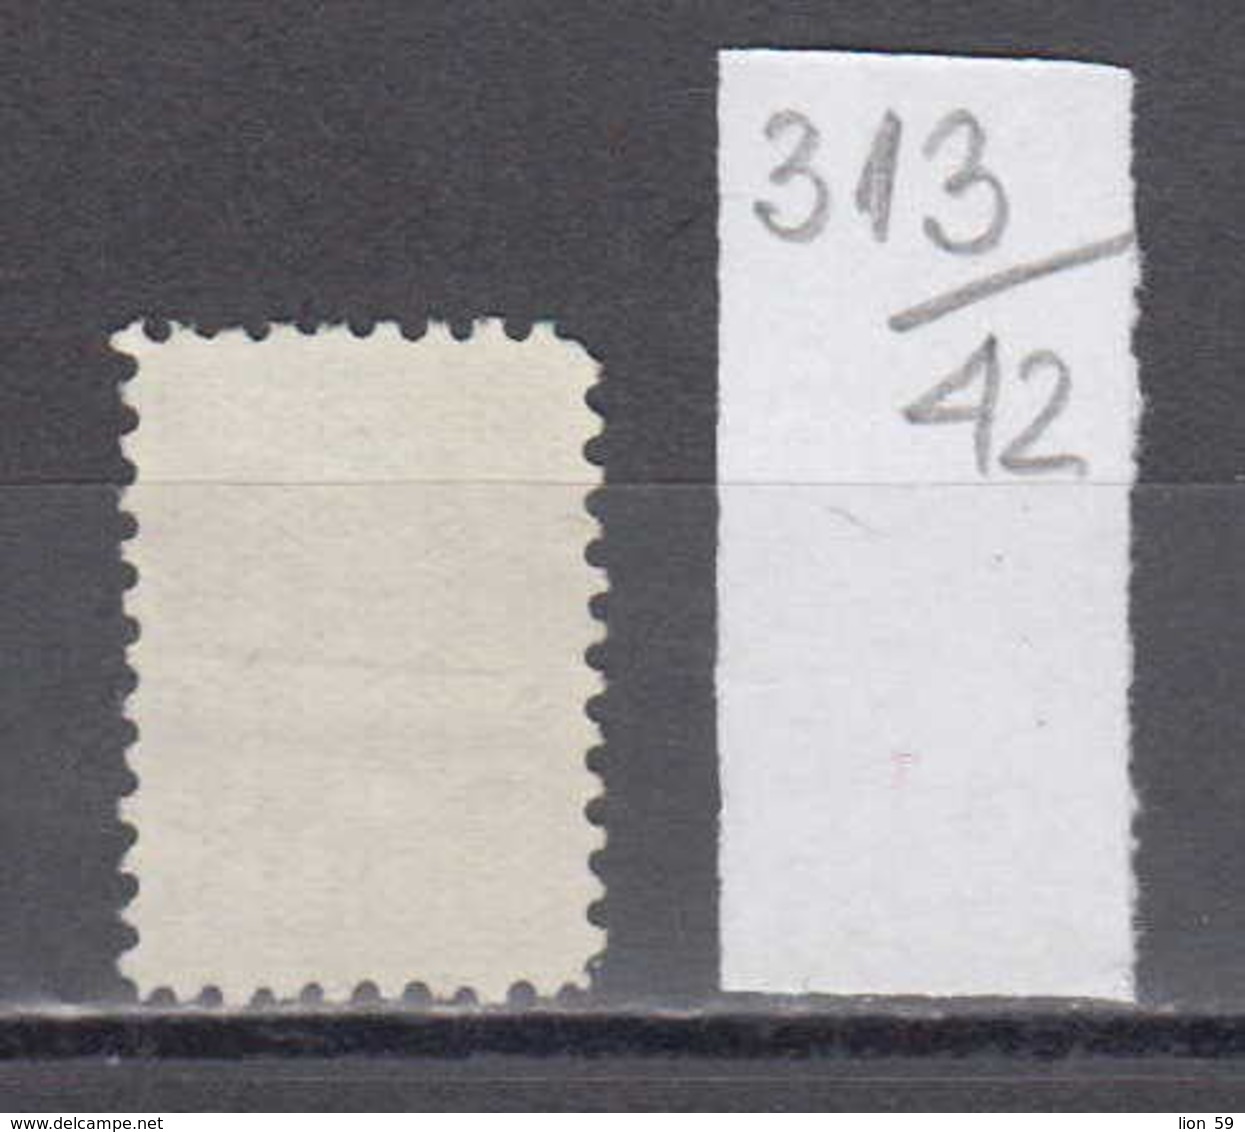 42K313 / 5 GLD - CONSULAIRE DIENST NEDERLAND , Revenue Fiscaux Steuermarken , Netherlands Nederland Pays-Bas - Revenue Stamps